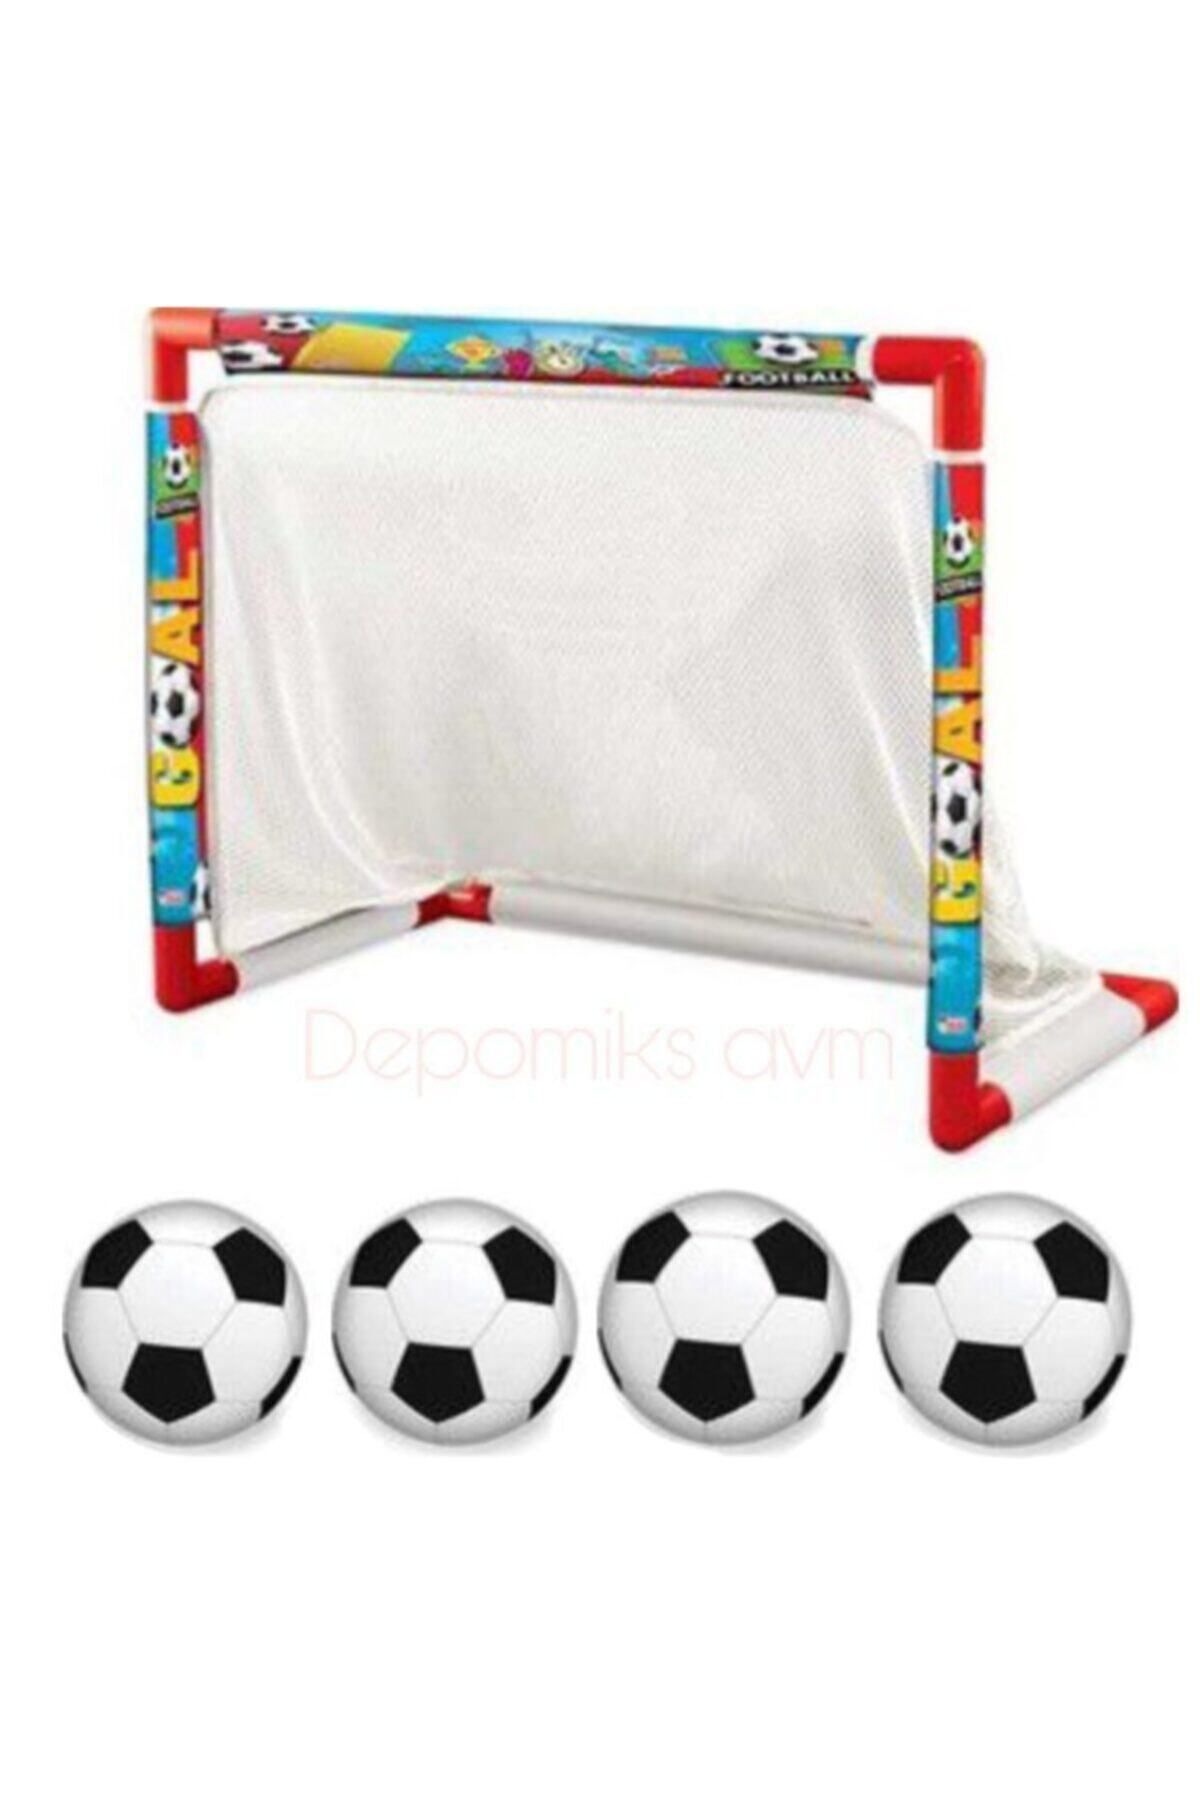 Depomiks Avm Oyuncak Minyatür Futbol Kalesi + 4 Adet Futbol Topu Erkek Çocuk Oyuncak